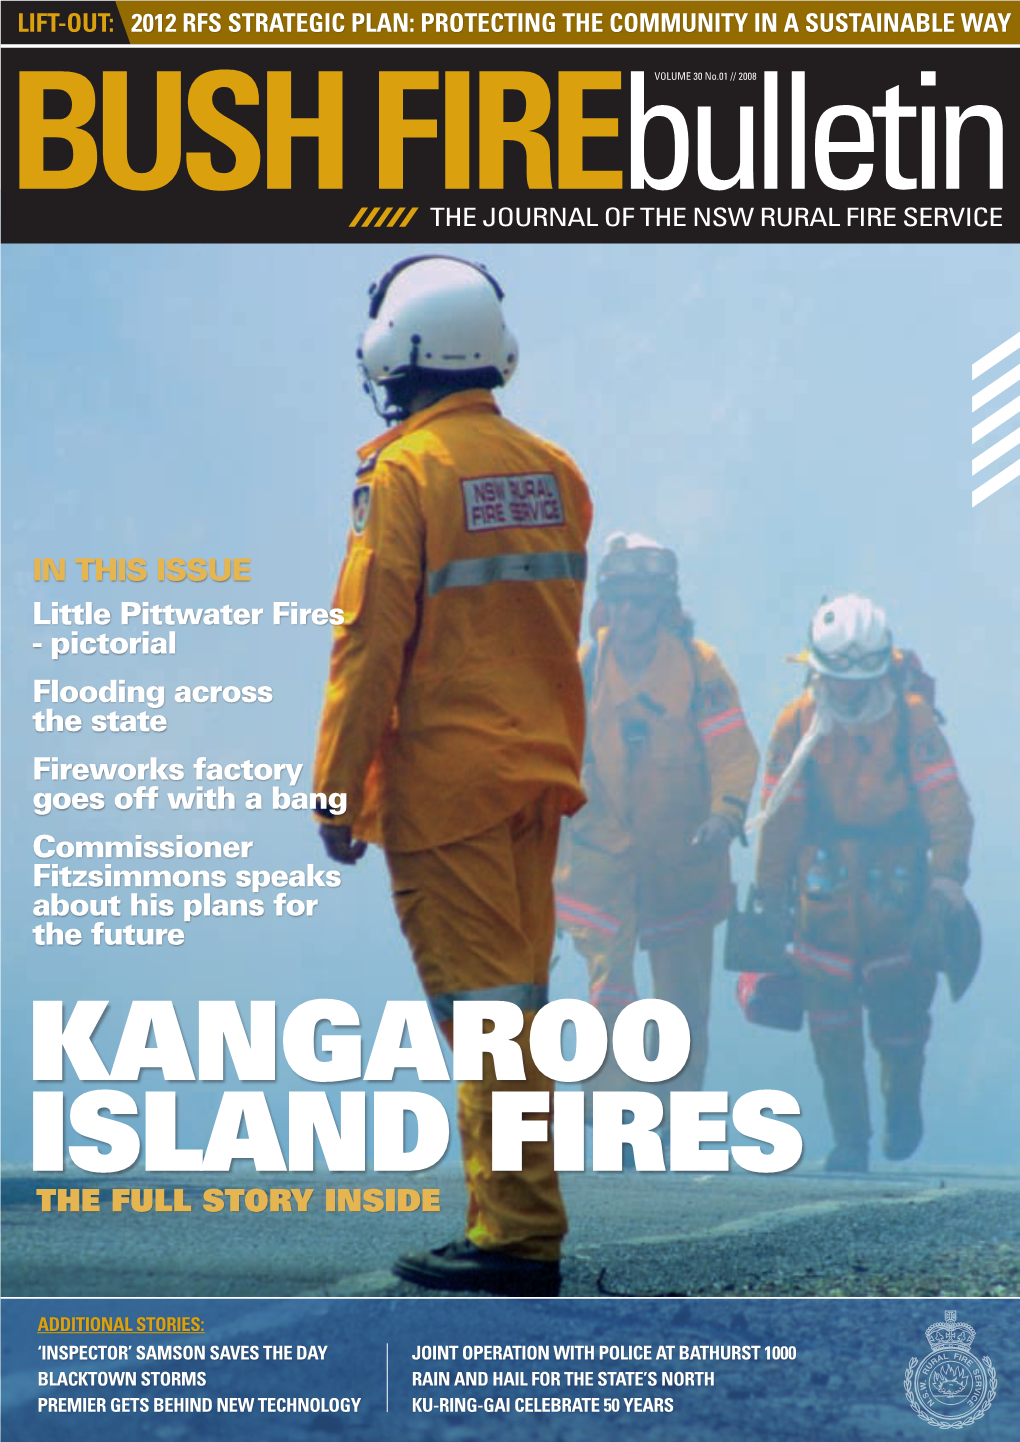 Kangaroo Island FIRES the FULL STORY INSIDE